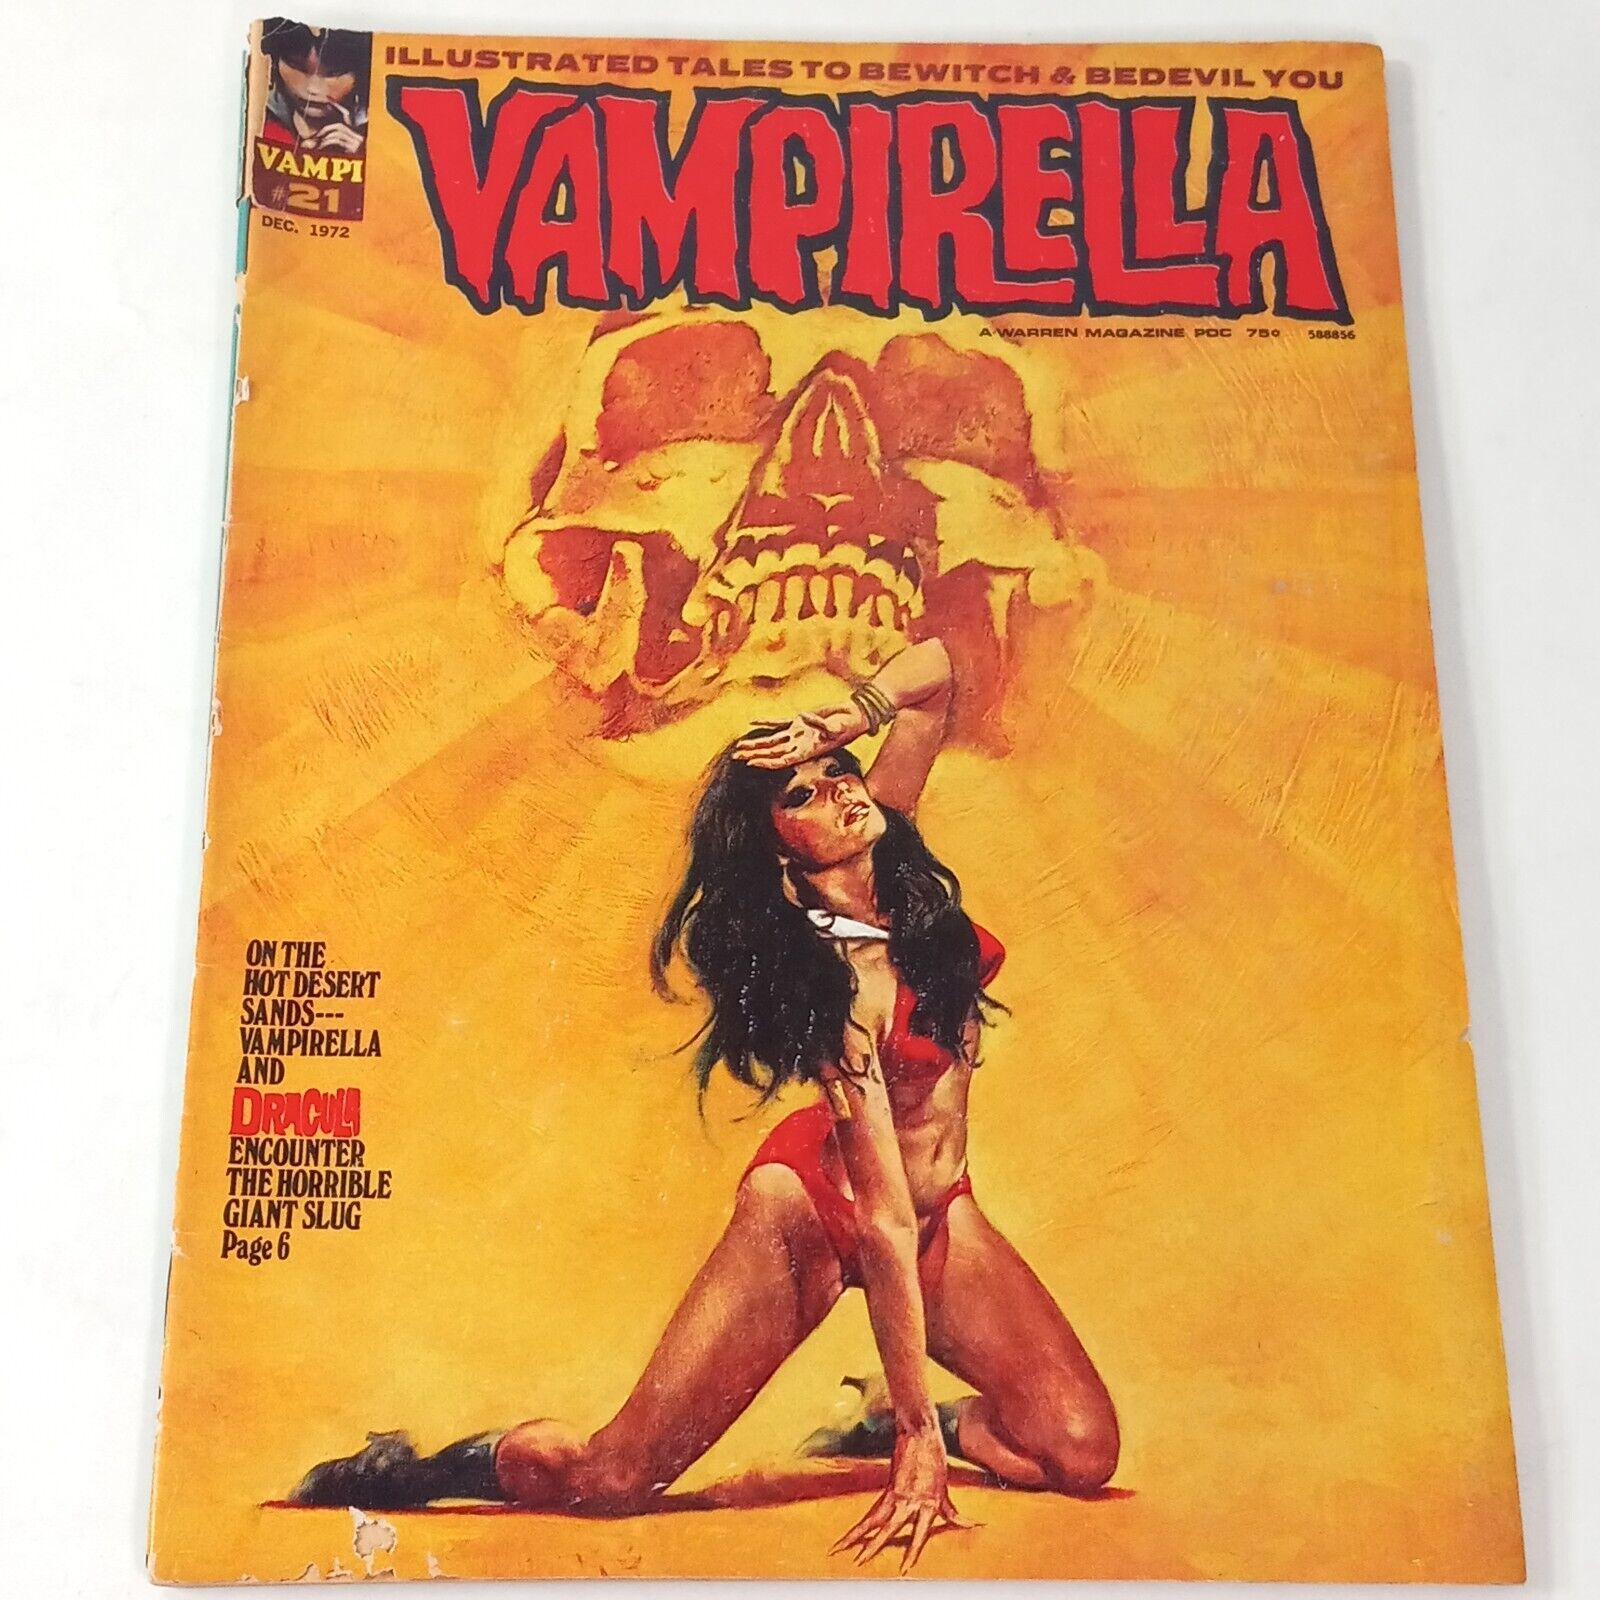 Vampirella Dec 1972 VTG Warren Magazine Horror Comic Vampi 21 Dracula Giant Slug